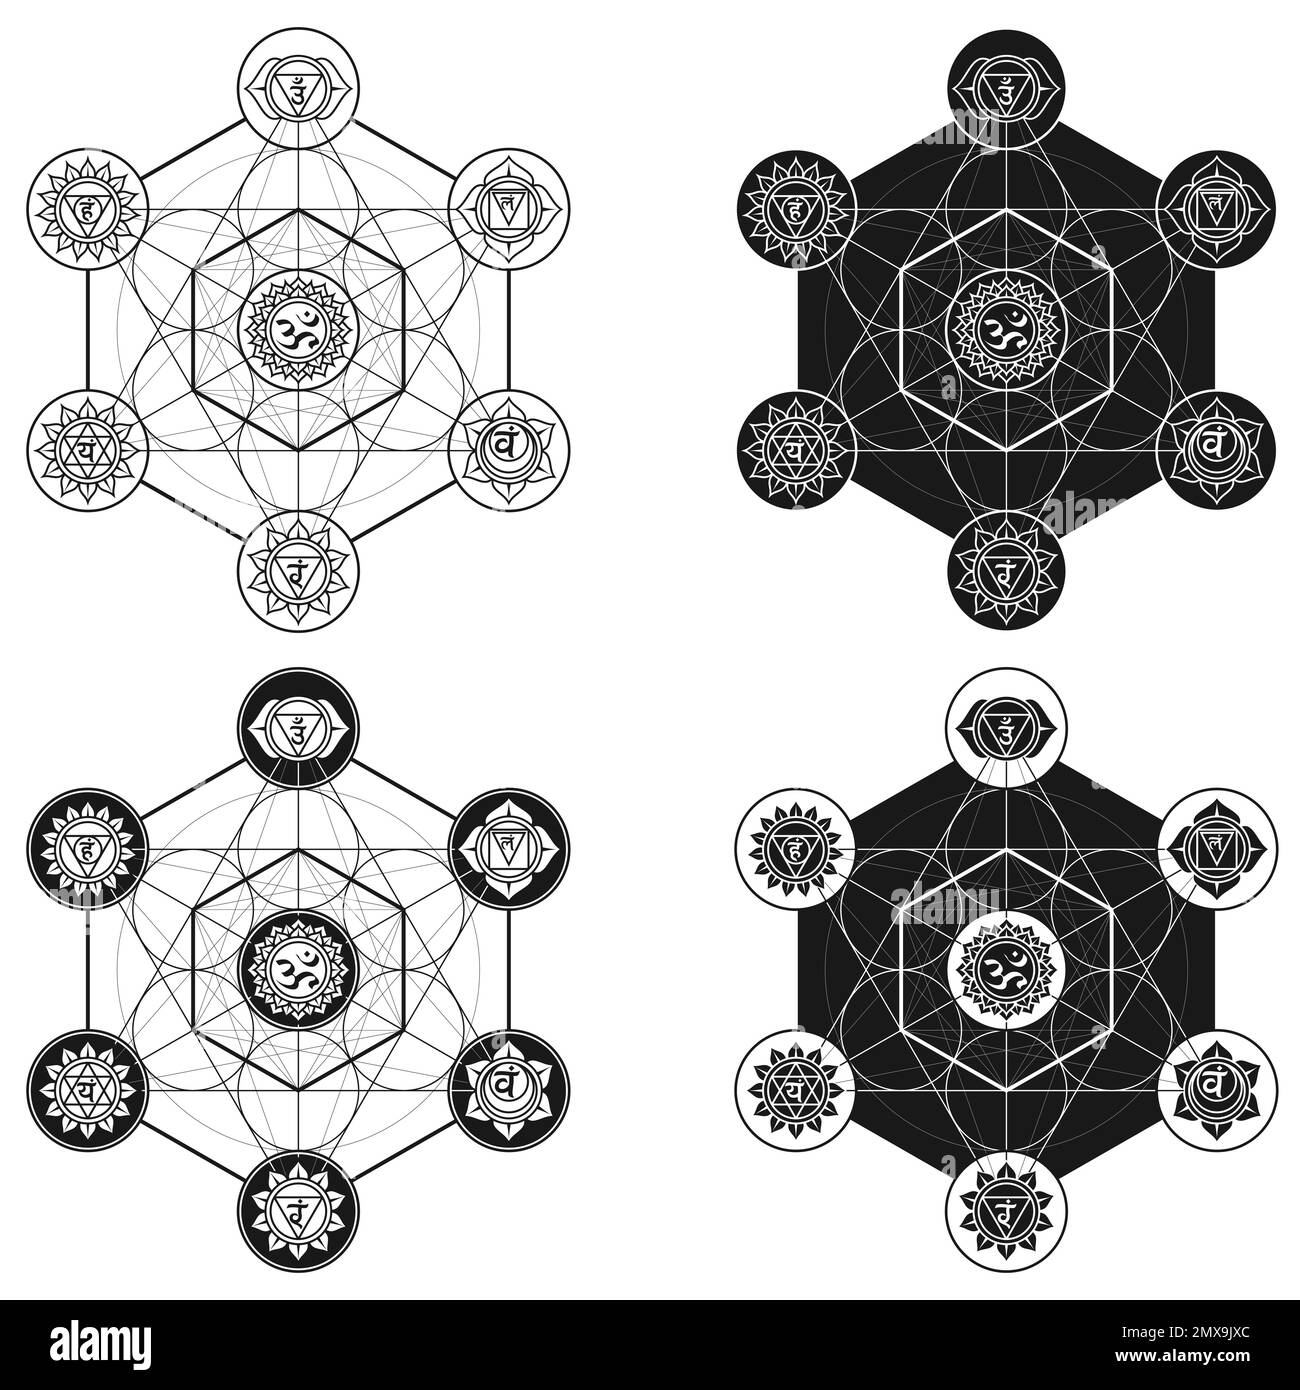 Disegno vettoriale del simbolo metatron, geometria sacra, figura geometrica del metatron con simboli chakra Illustrazione Vettoriale